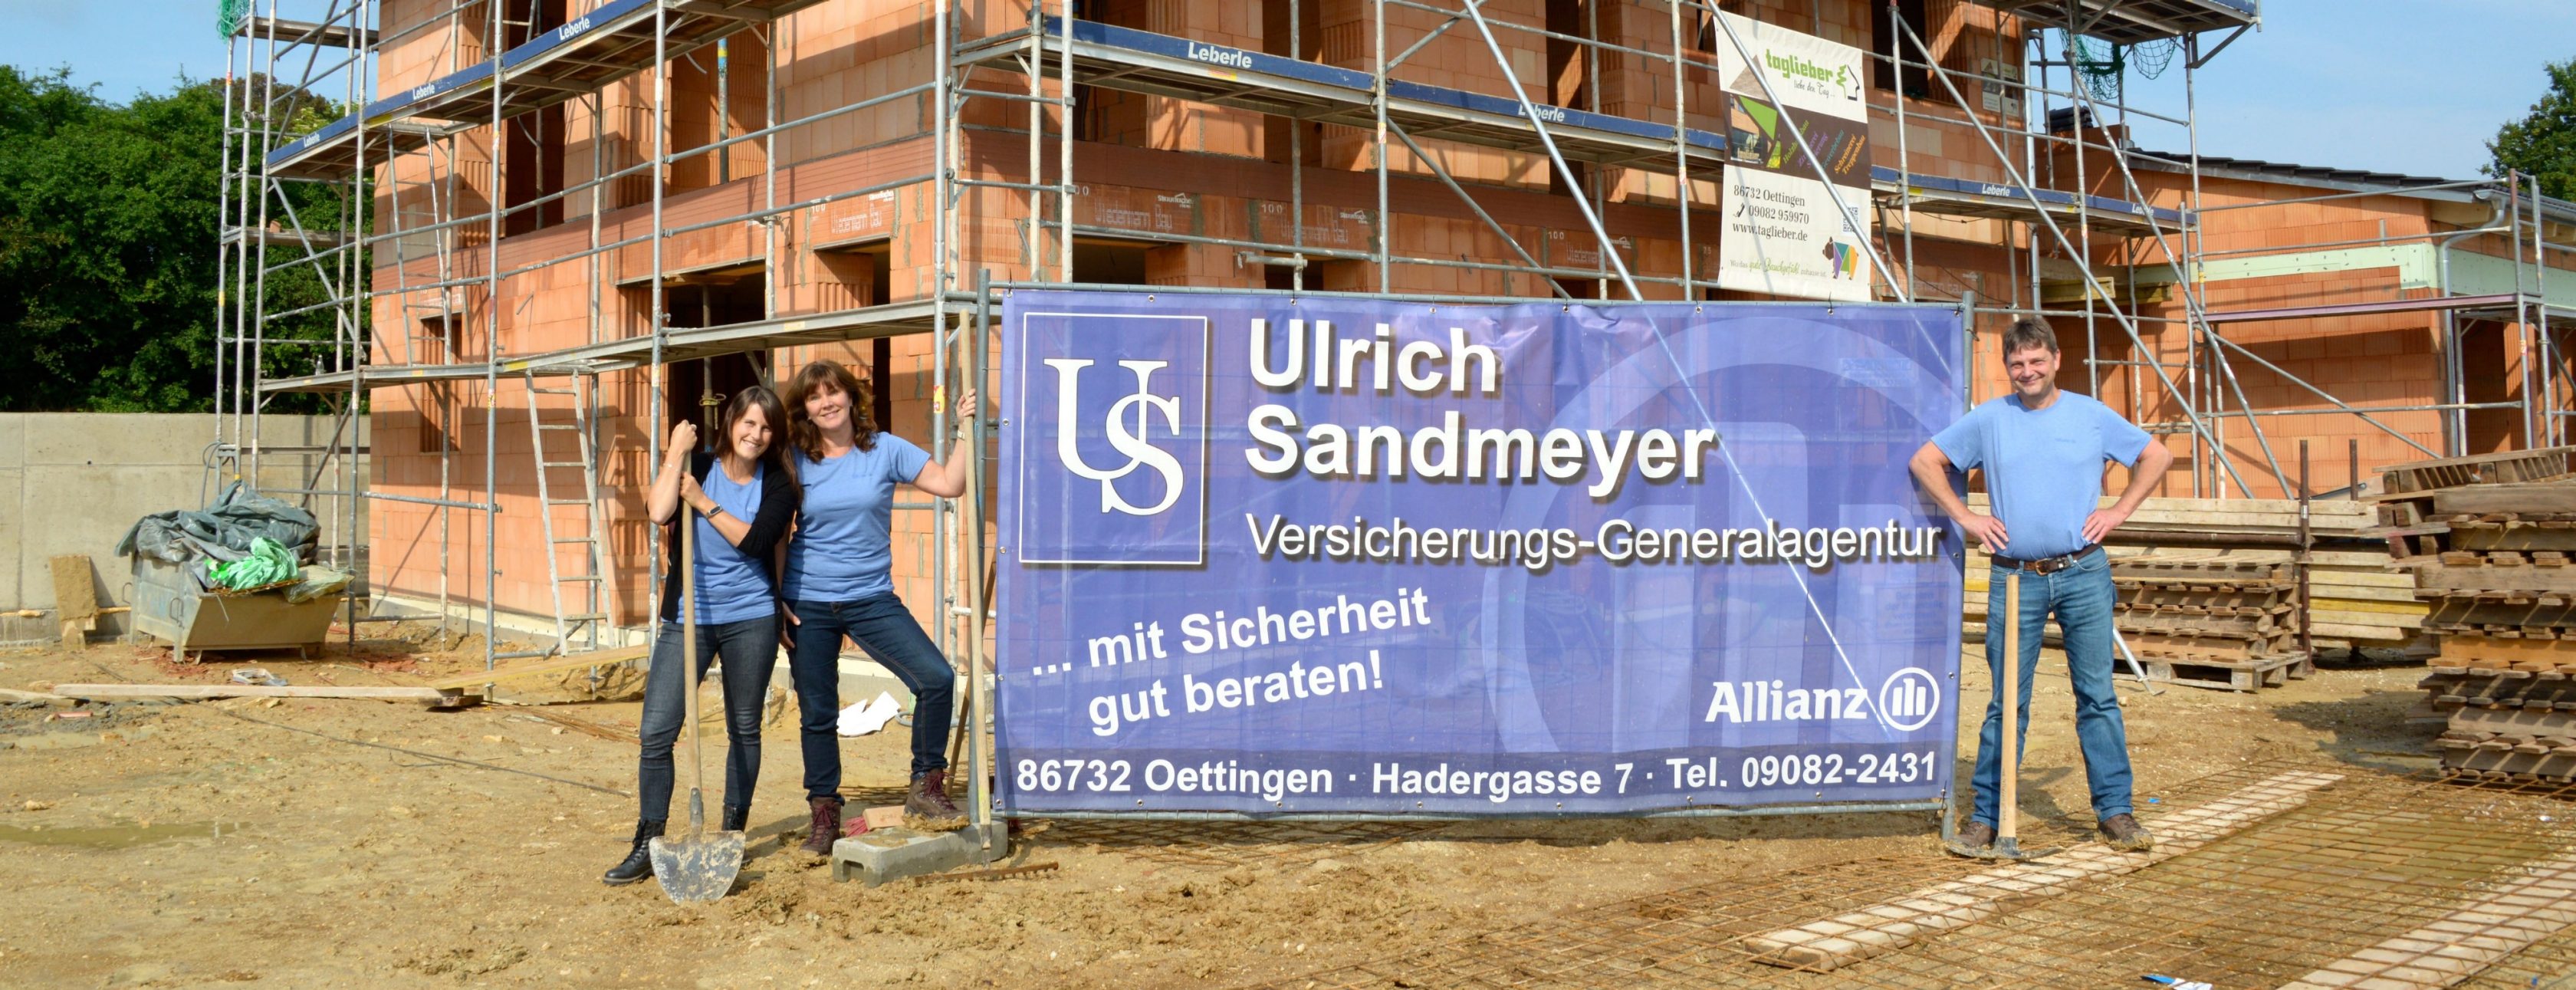 Allianz Versicherung Ulrich Sandmeyer e.K. Oettingen - Allianz Ulrich Sandmeyer